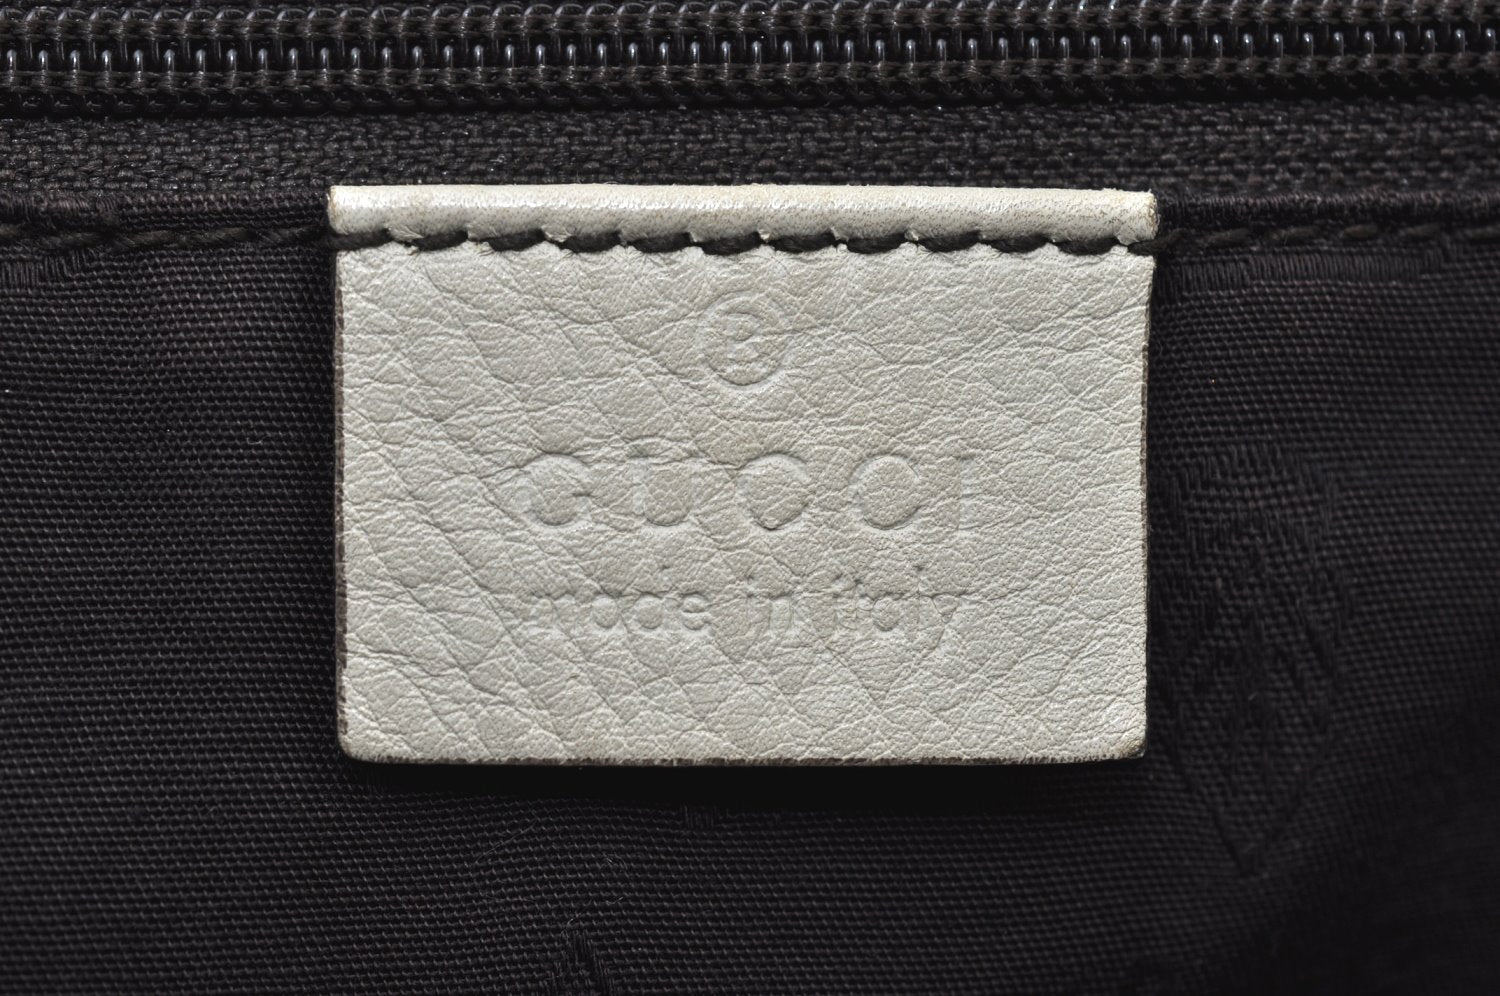 Authentic GUCCI Guccissima Sukey Shoulder Tote Bag GG Leather 211944 White 2161J